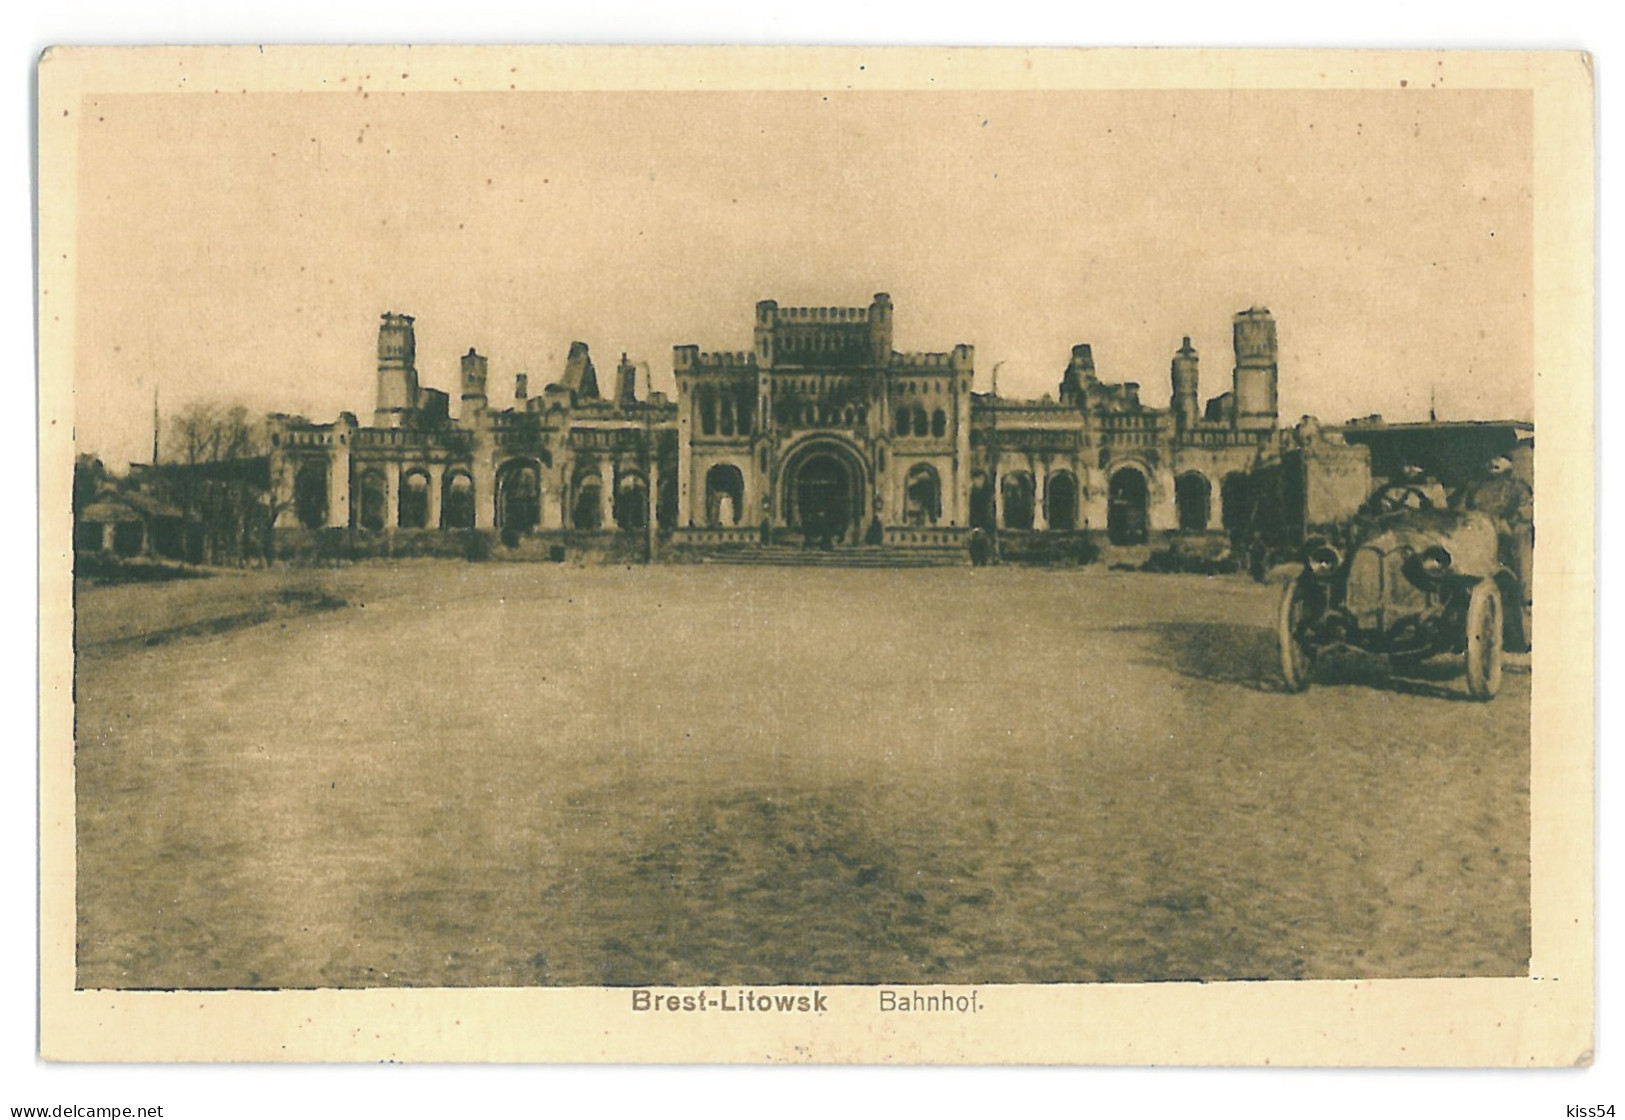 BL 28 - 13734 BREST-LITOWSK, Railway Station, Belarus - Old Postcard, CENSOR - Used - 1916 - Belarus